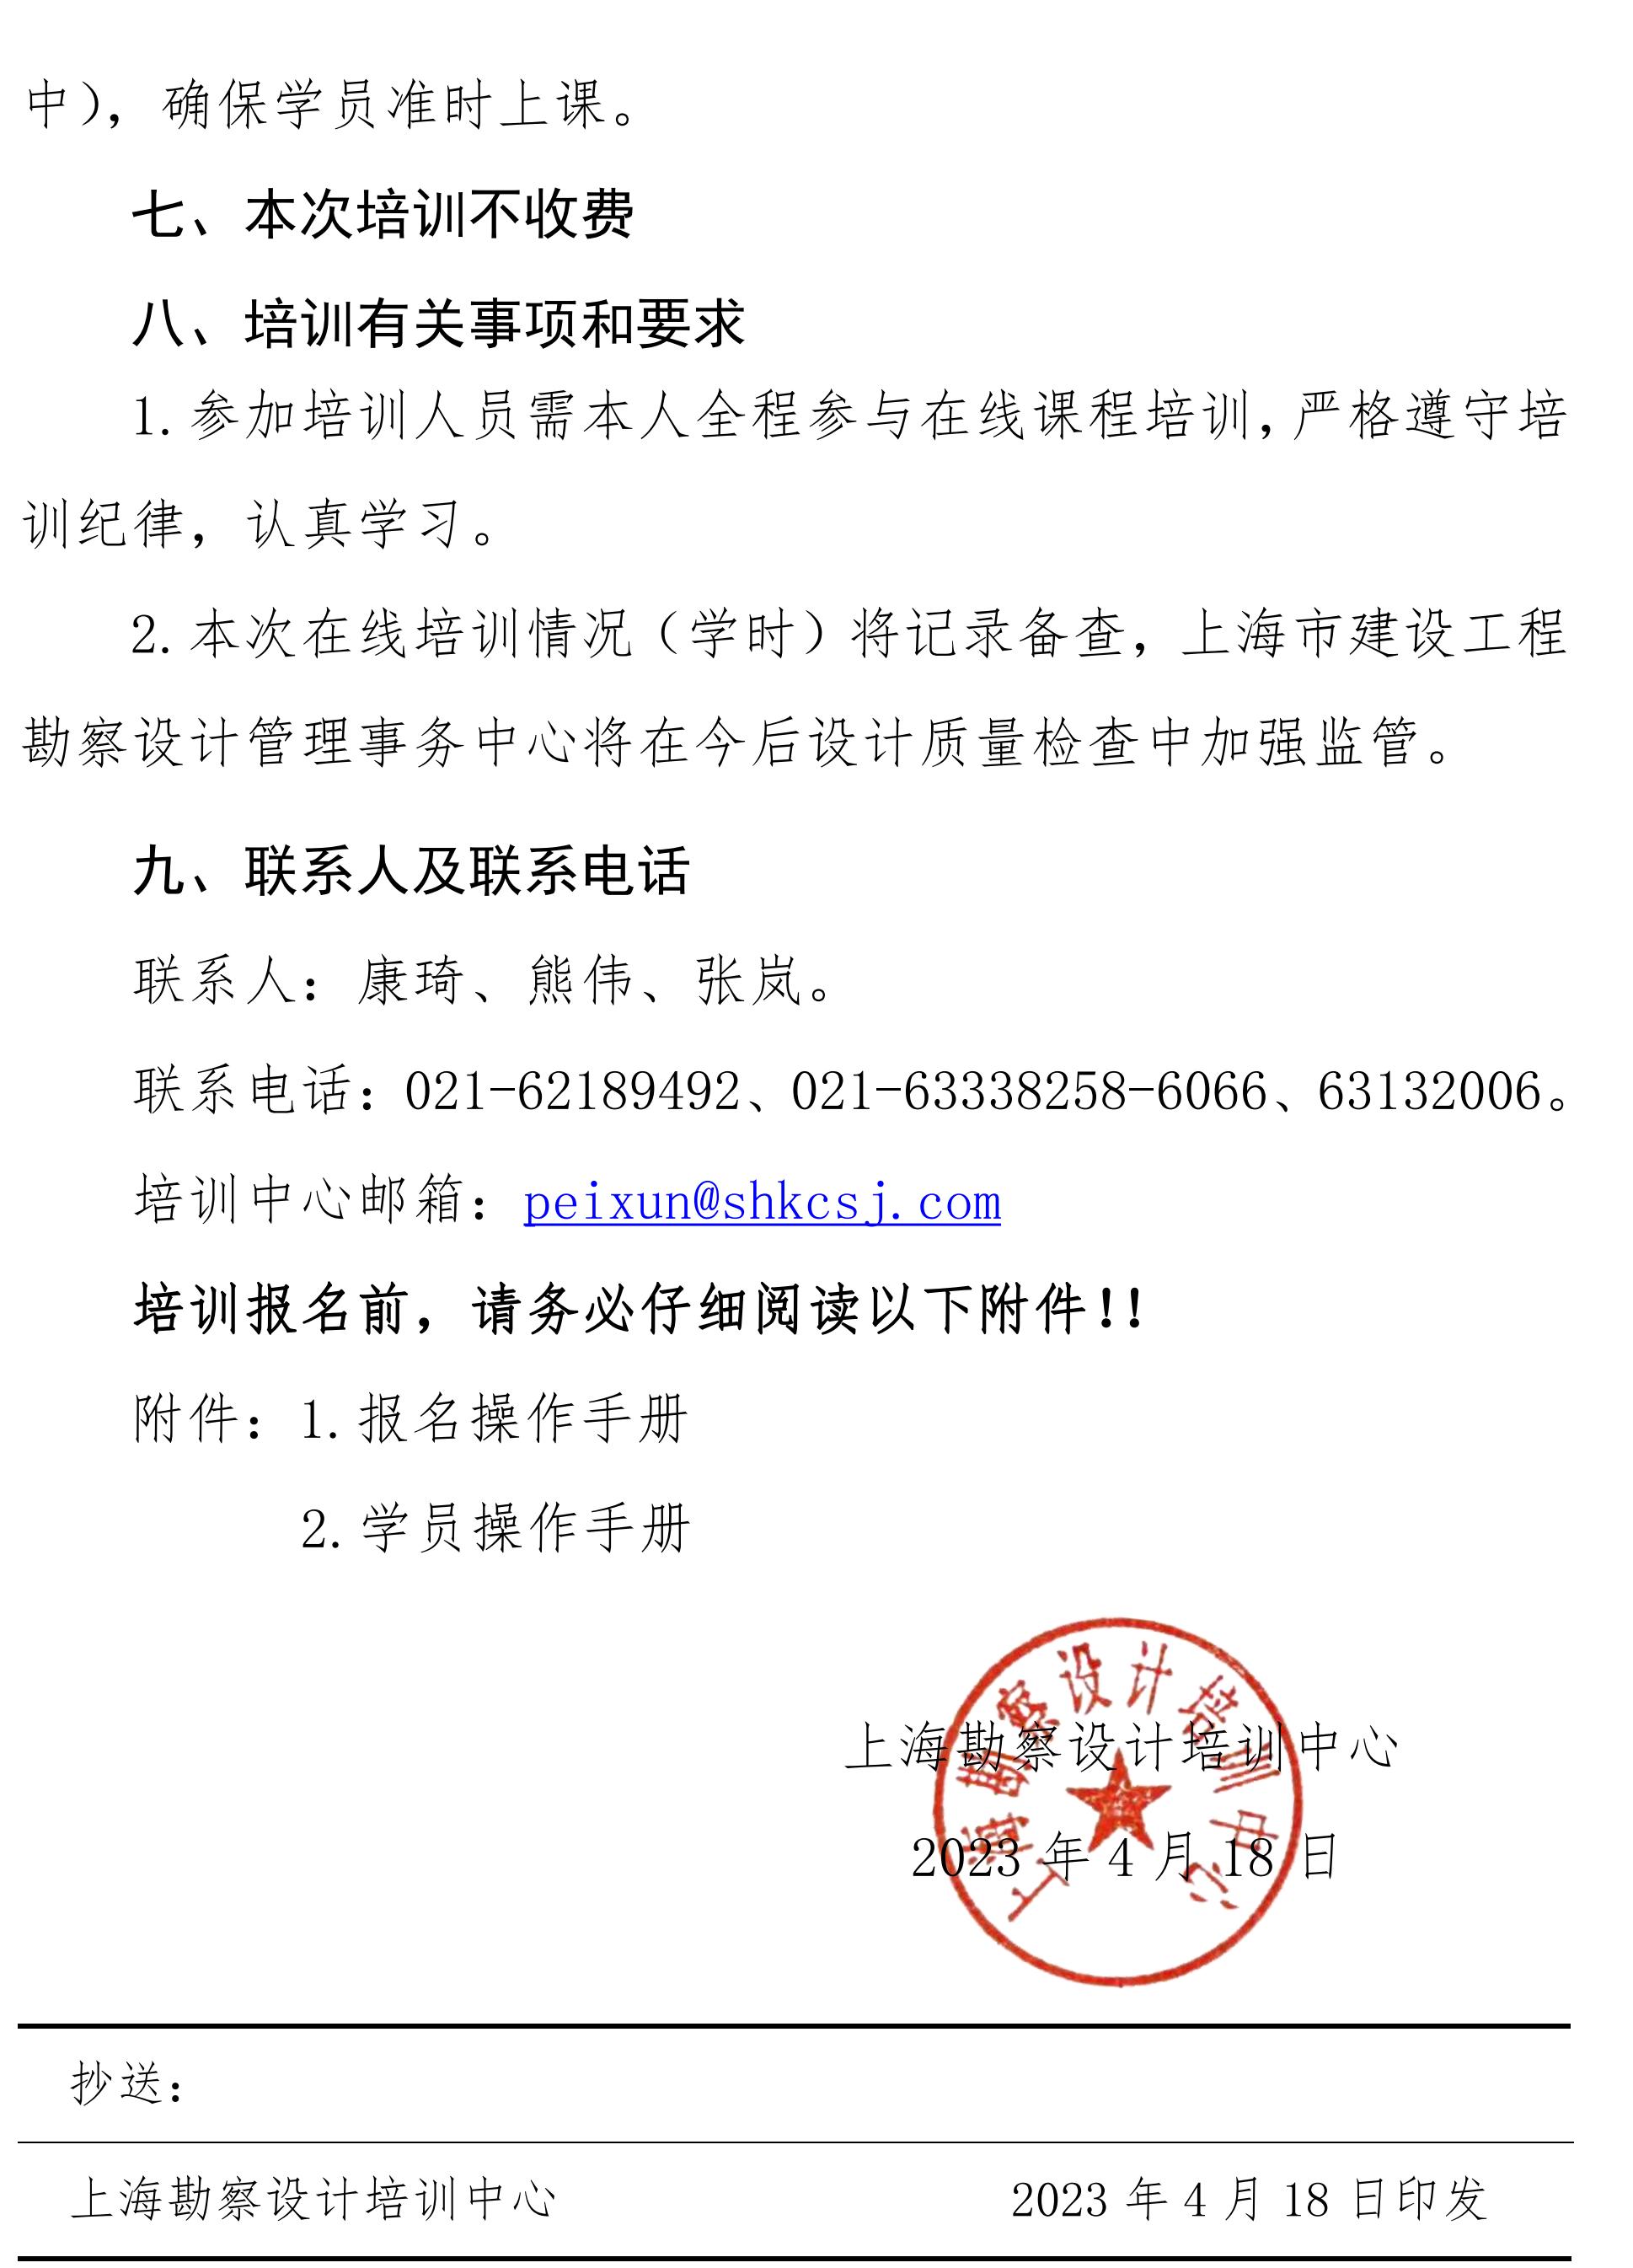 沪勘设培〔2023〕6号 -- 关于《上海市房屋建筑工程施工图设计文件技术审查要点（3.0版）（建筑、结构篇）》及《上海市旧住房成套改造项目施工图设计文件技术审查要点》技术培训的通知2_03.jpg